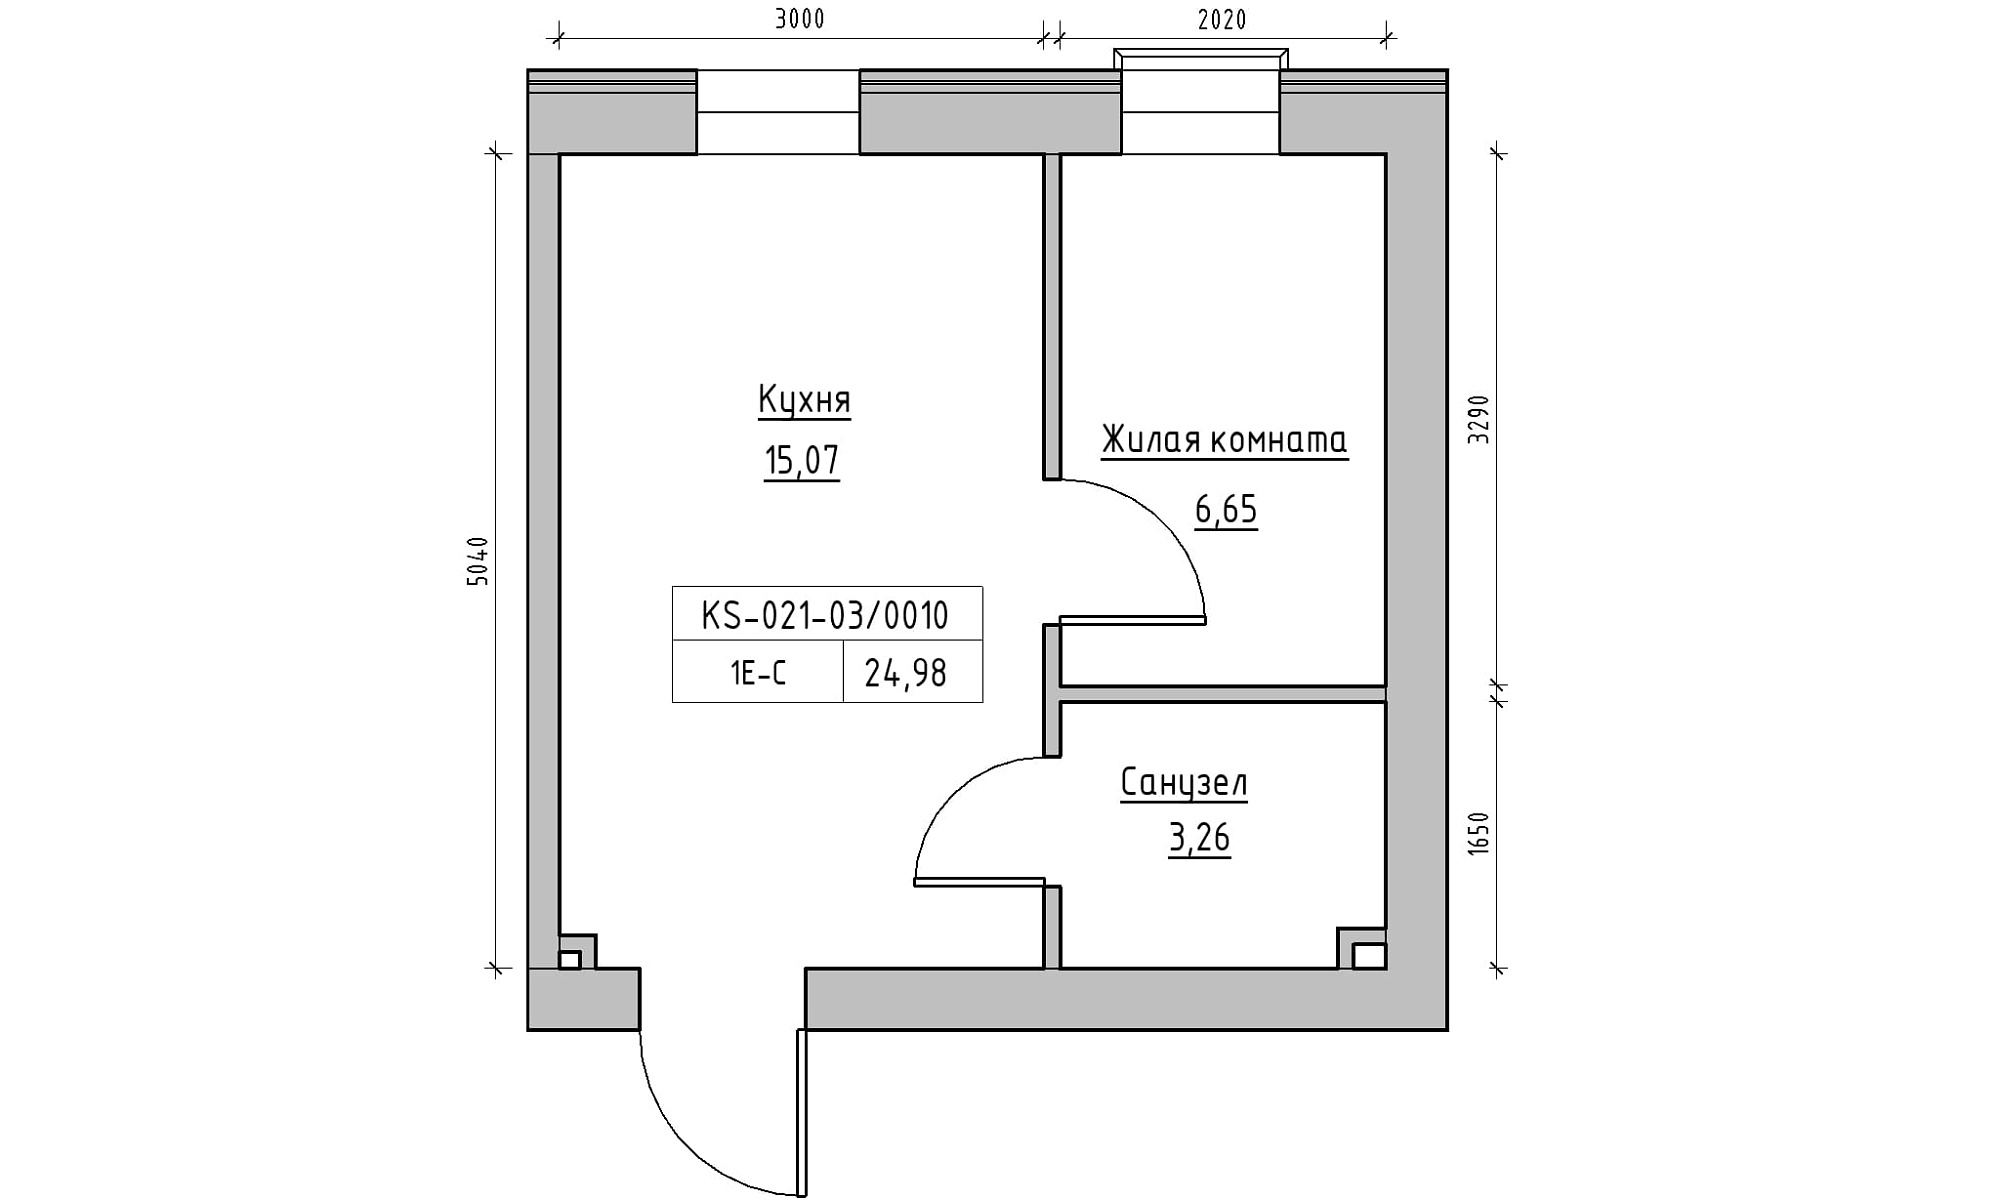 Планировка 1-к квартира площей 24.98м2, KS-021-03/0010.